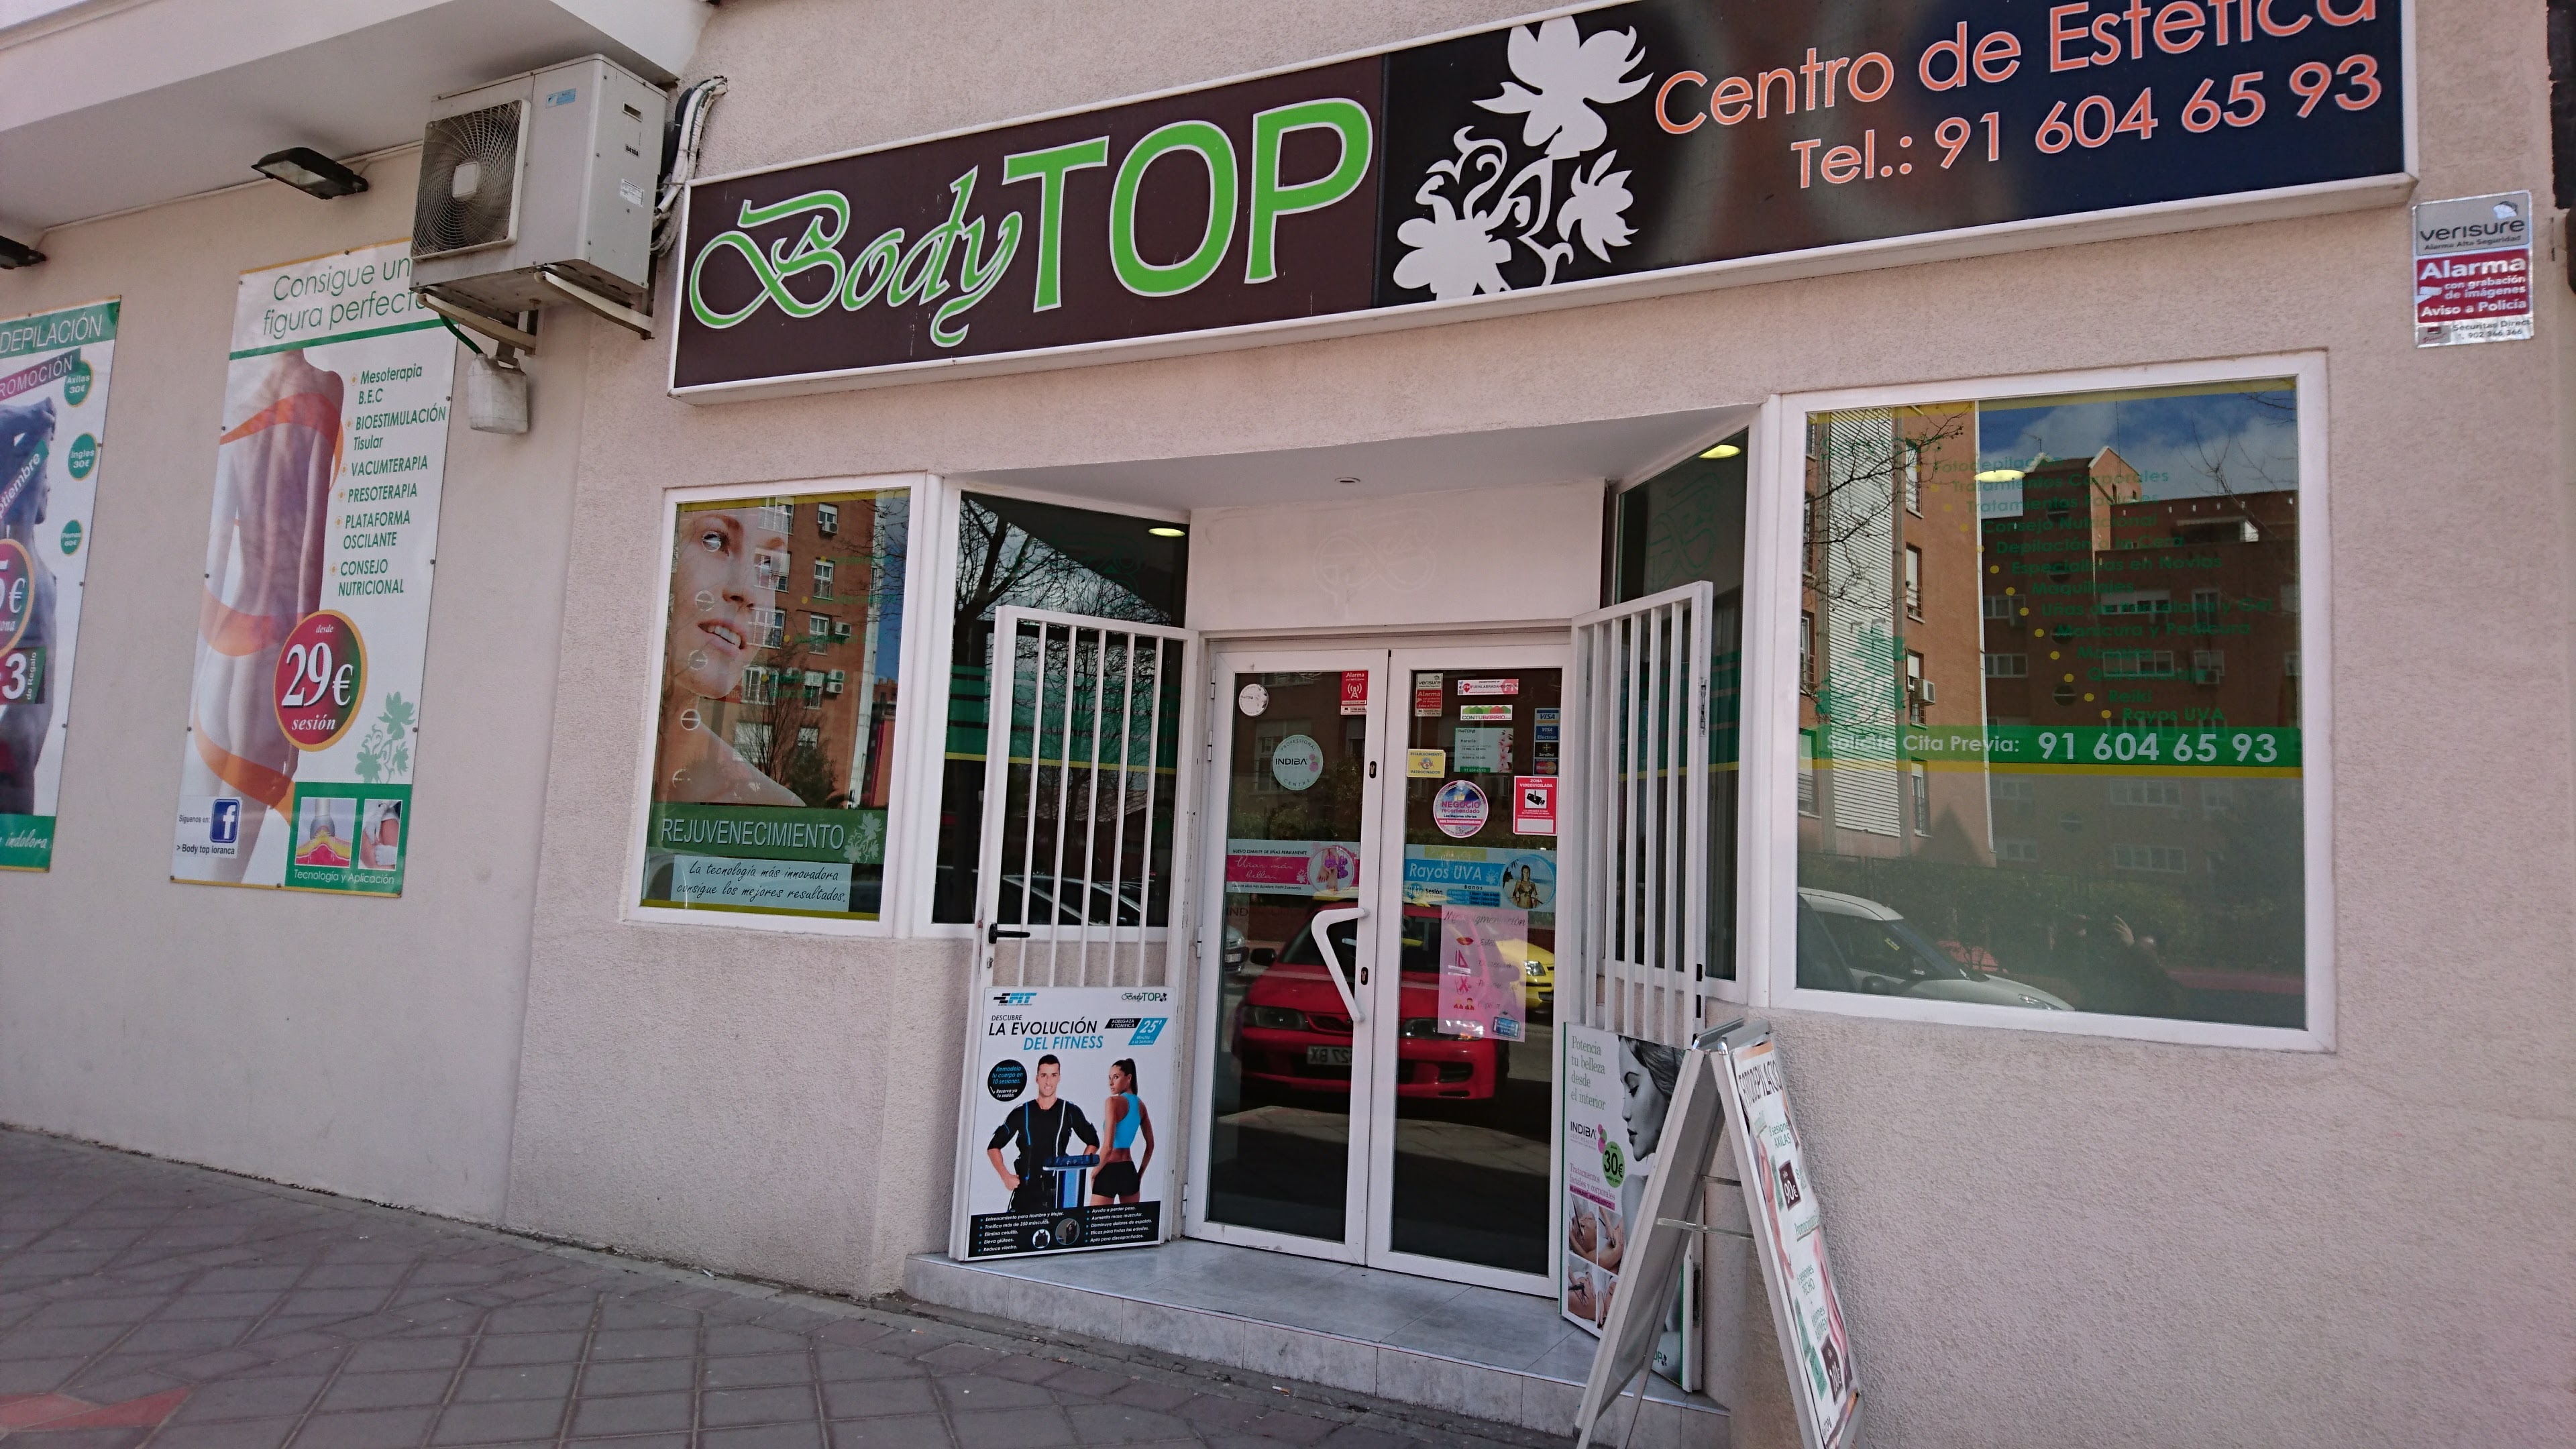 Entrevista y reportaje a Bodytop, tu centro estetico imprescindible en Fuenlabrada